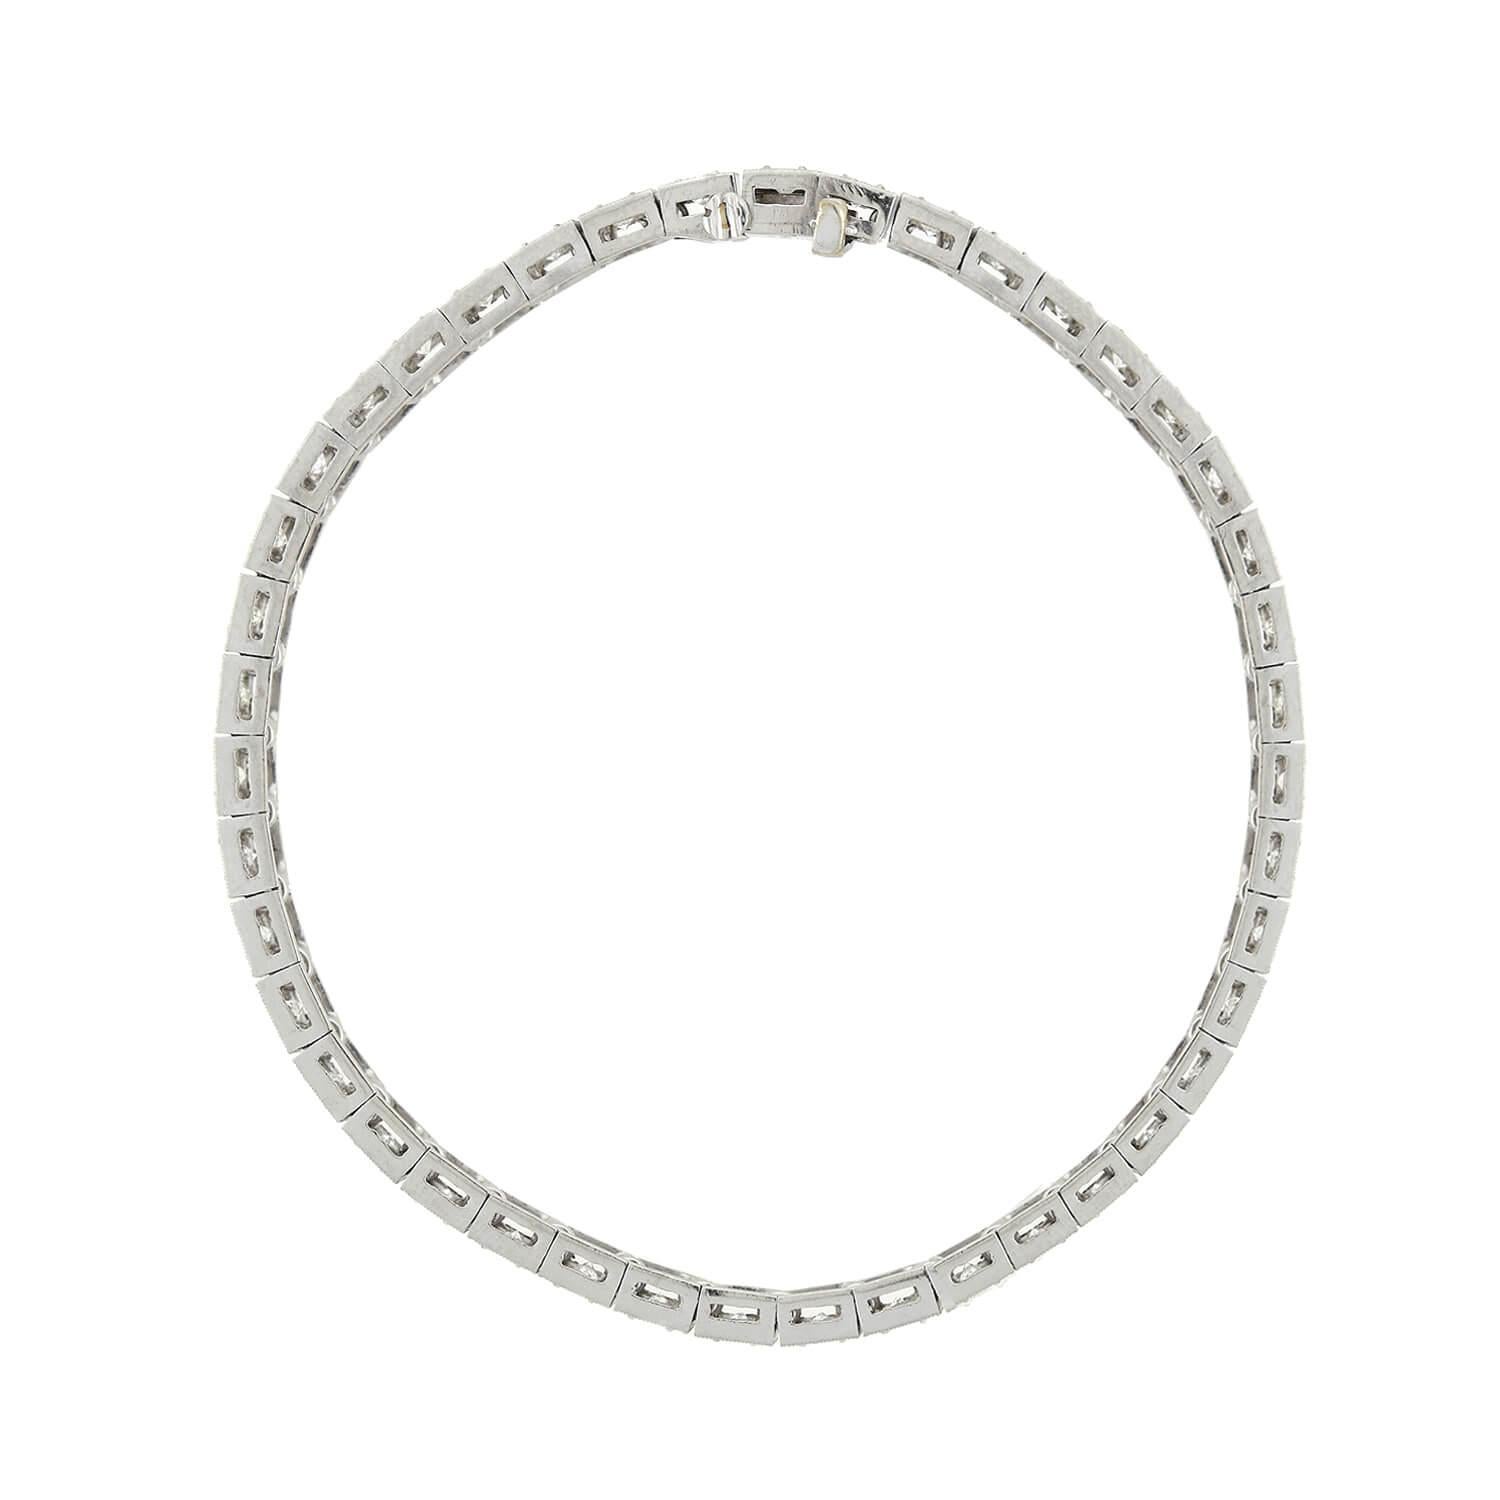 Un incroyable bracelet à ligne de diamants de l'époque Art Déco (ca1920) ! Réalisée en platine, cette superbe pièce est composée de 42 maillons au total, chacun orné d'un diamant taille ancienne européenne. Les diamants étincelants sont sertis à